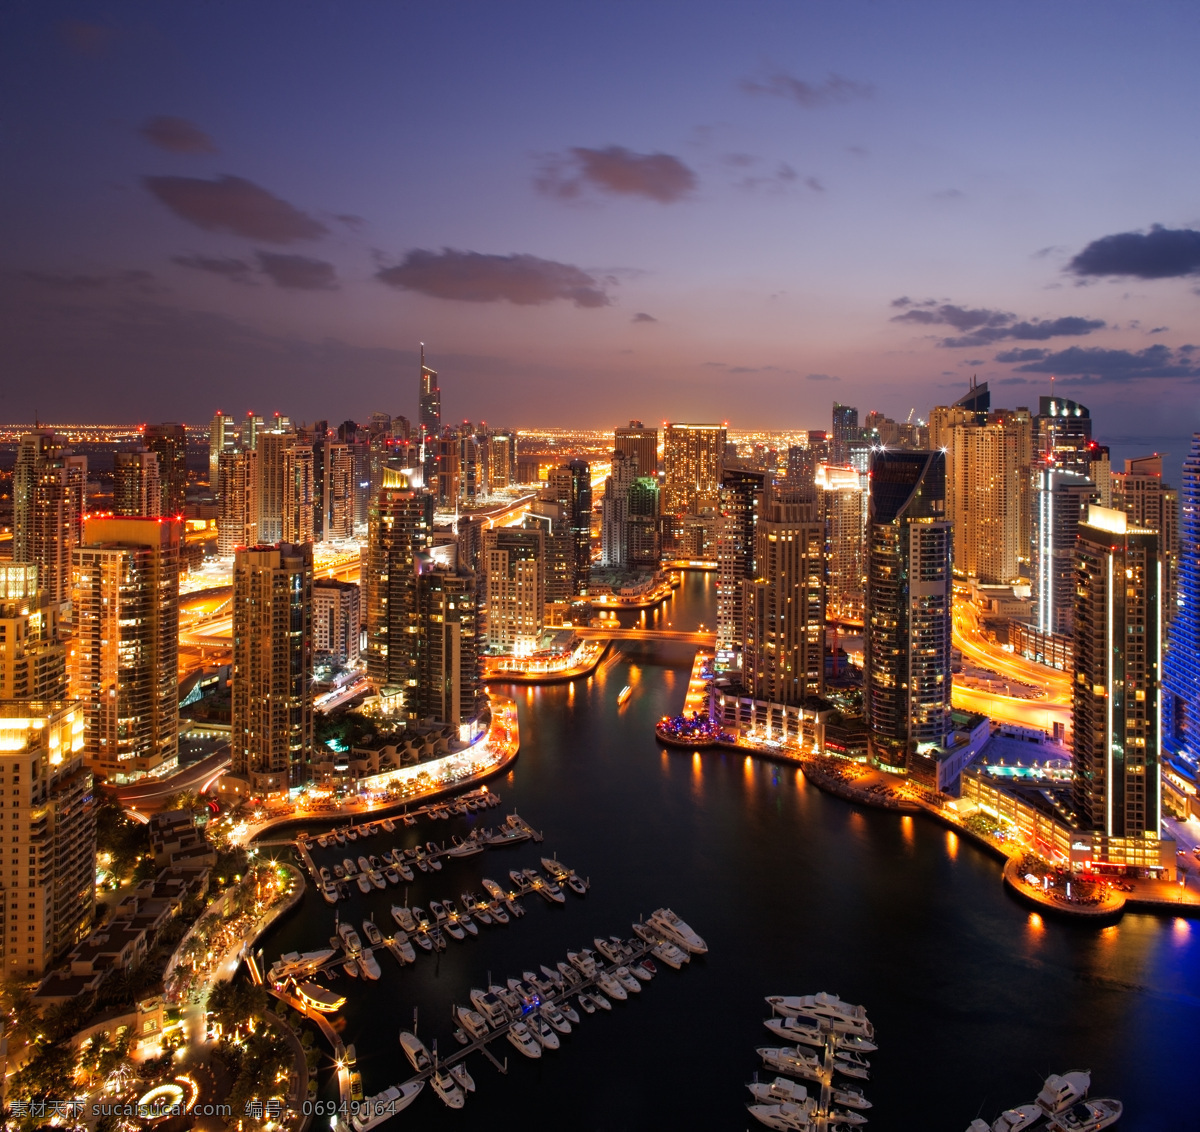 迪拜 美丽 夜景 高楼大厦 繁华都市 迪拜风景 城市风景 美丽风景 建筑设计 环境家居 迪拜美丽夜景 城市风光